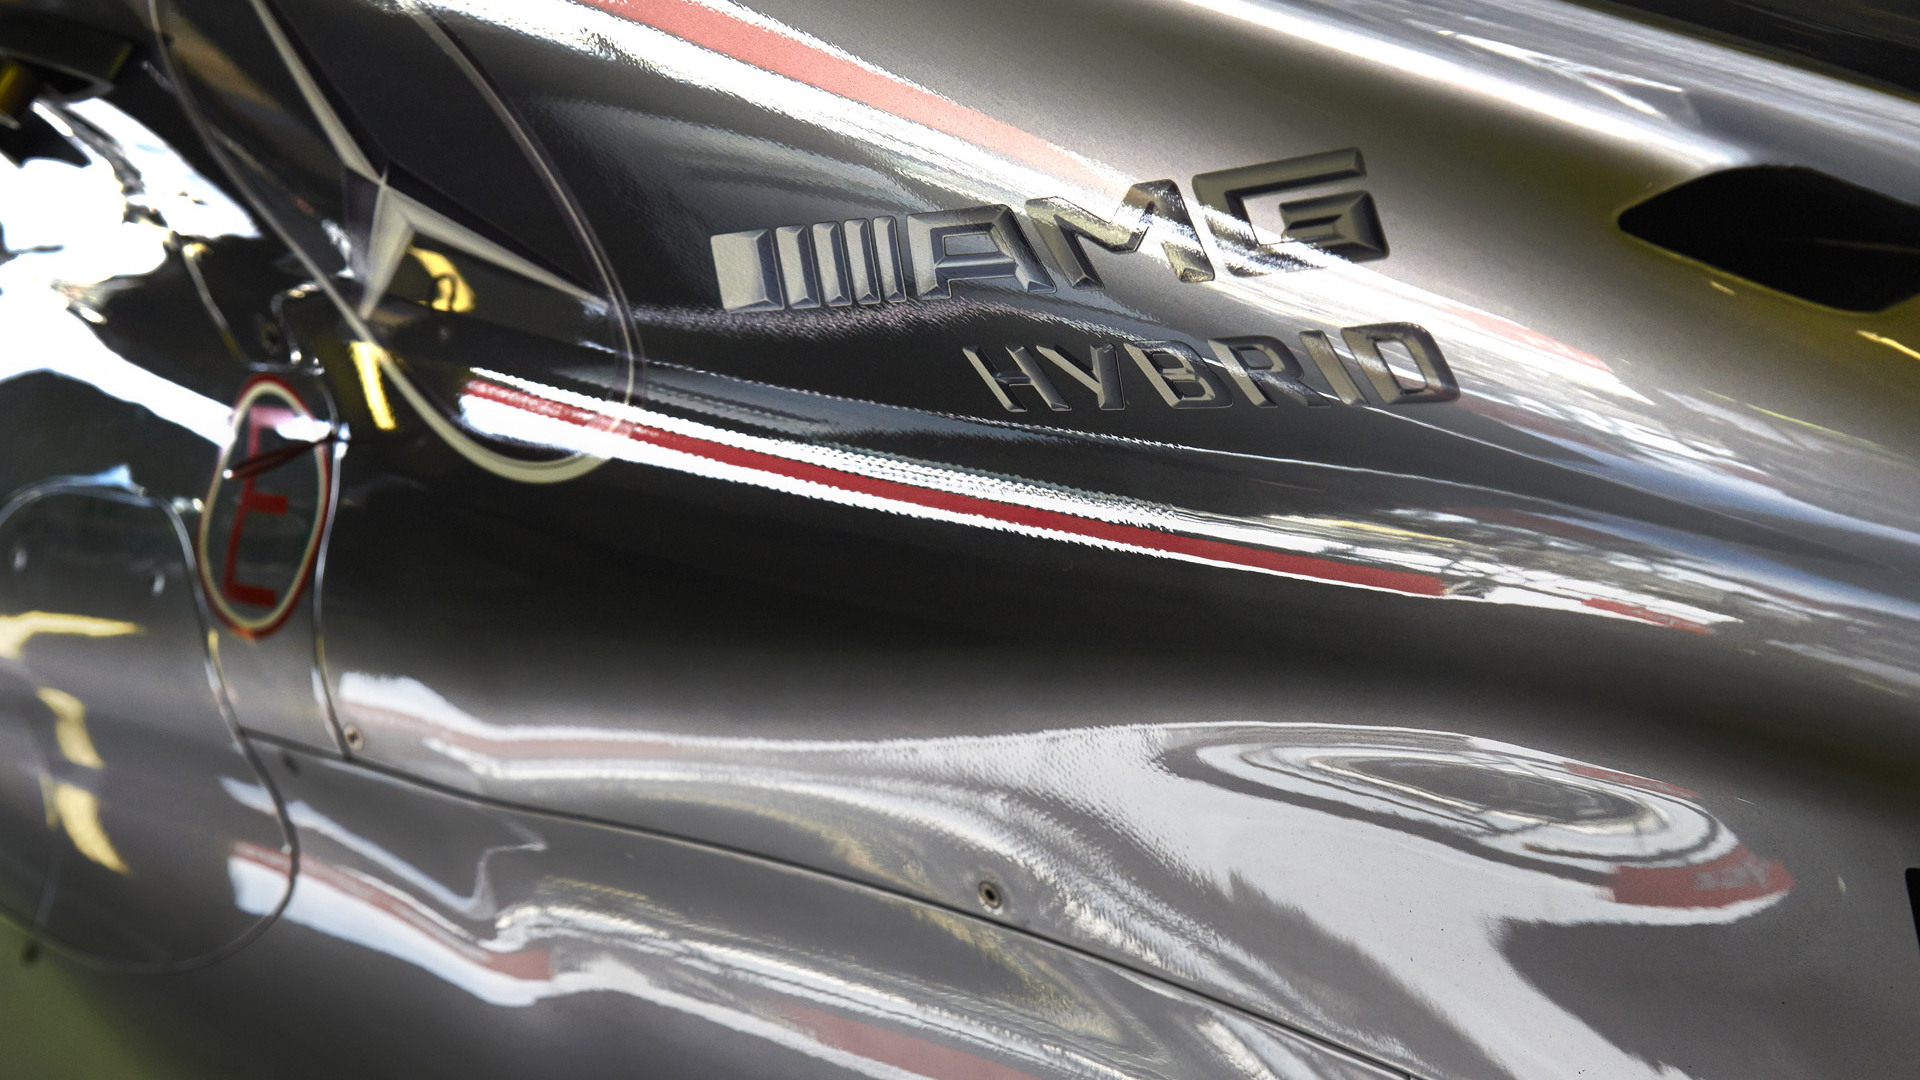 Mercedes AMG W06 Hybrid 2015 Formula One car